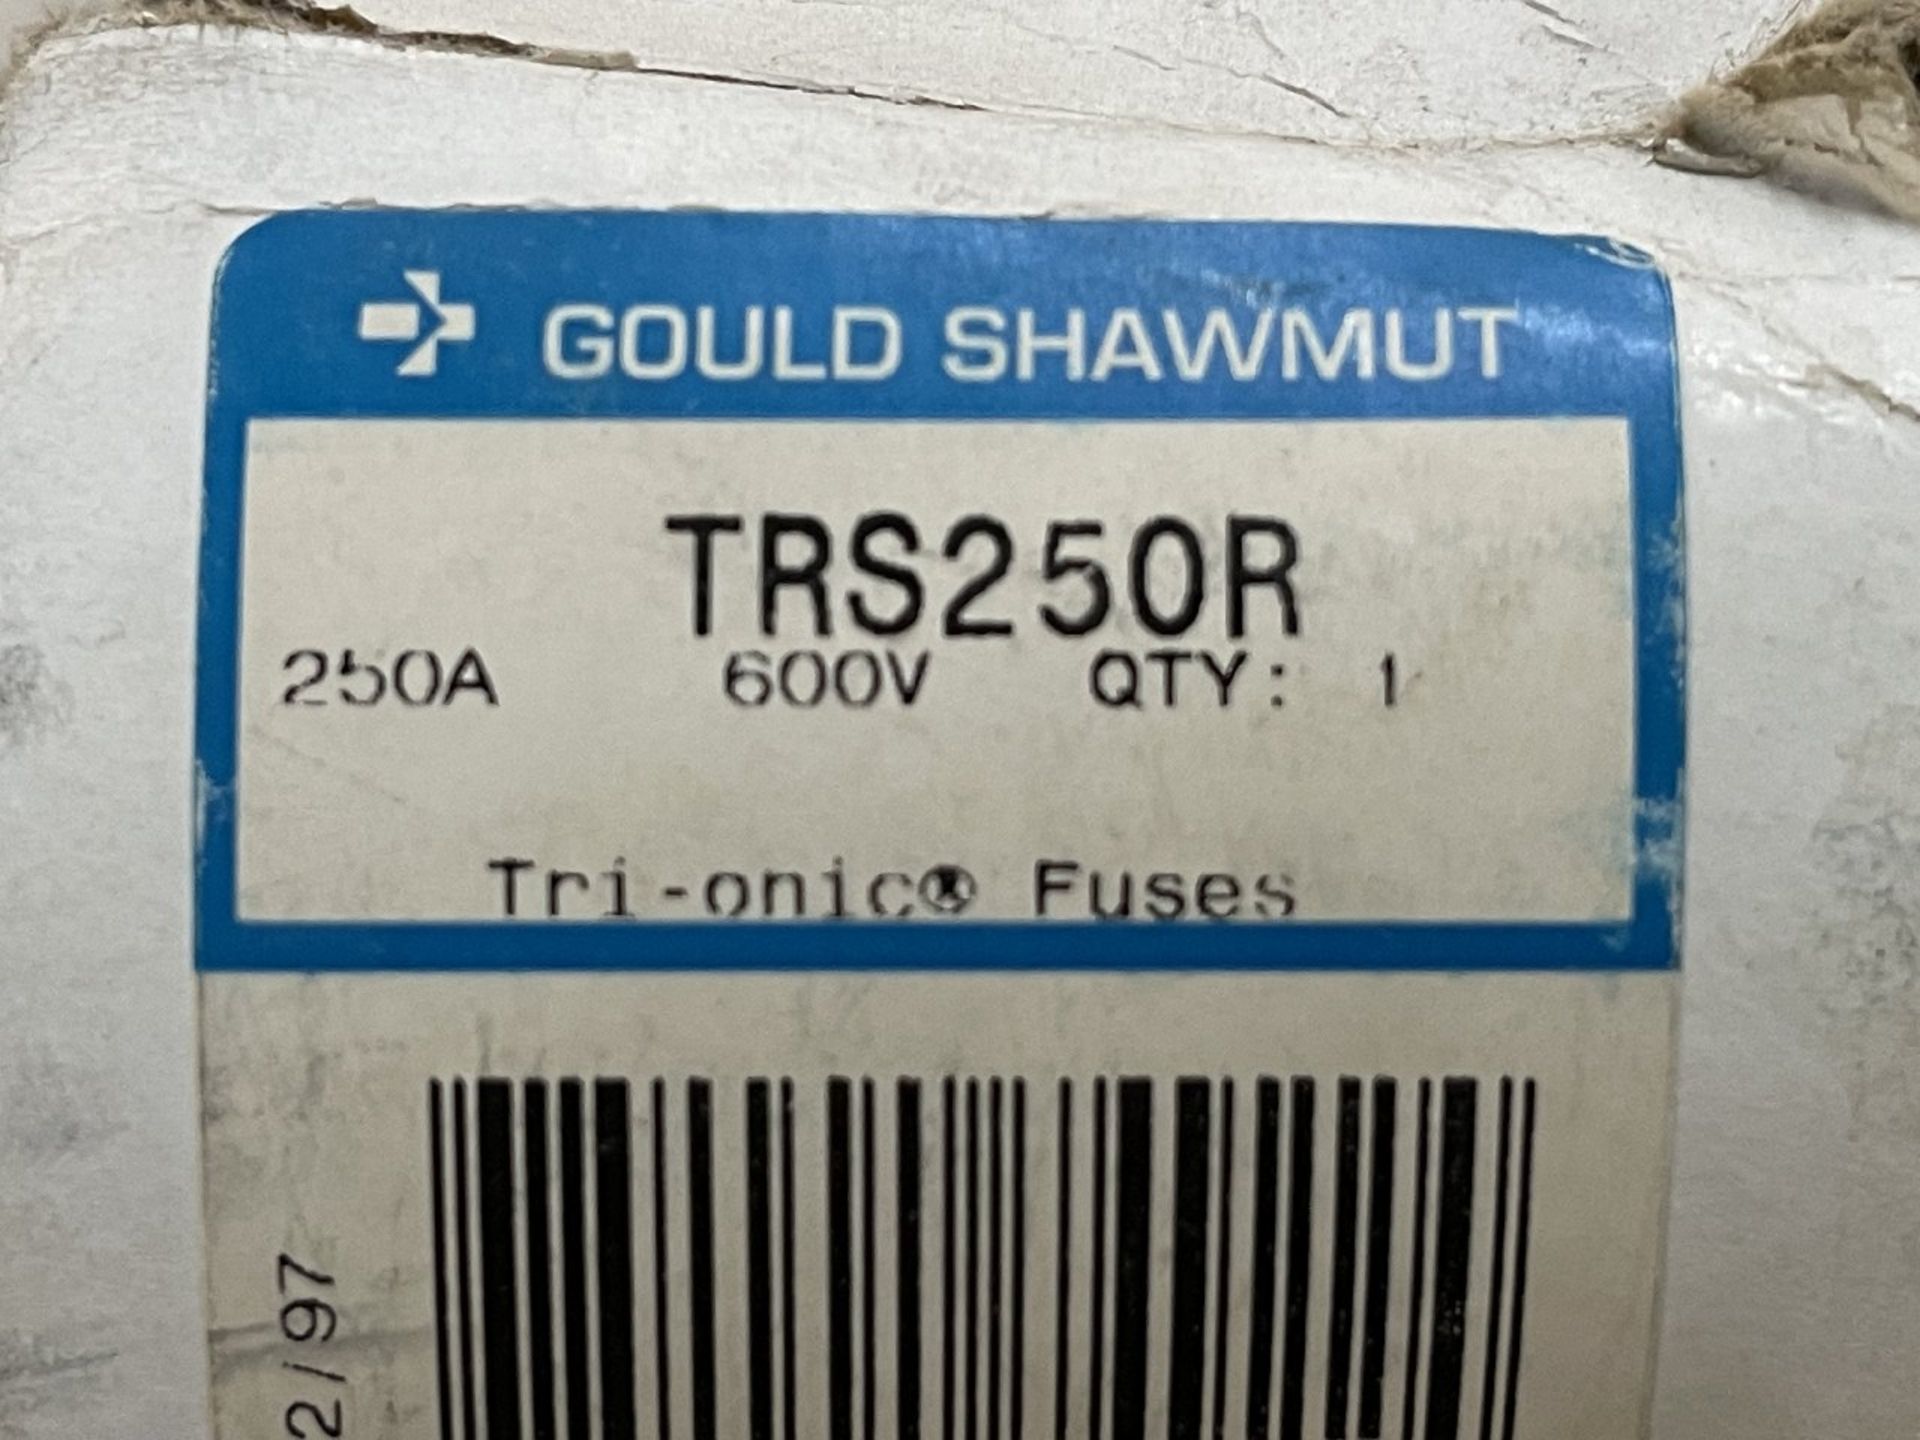 Gould Shawmut Fuses - Image 2 of 2